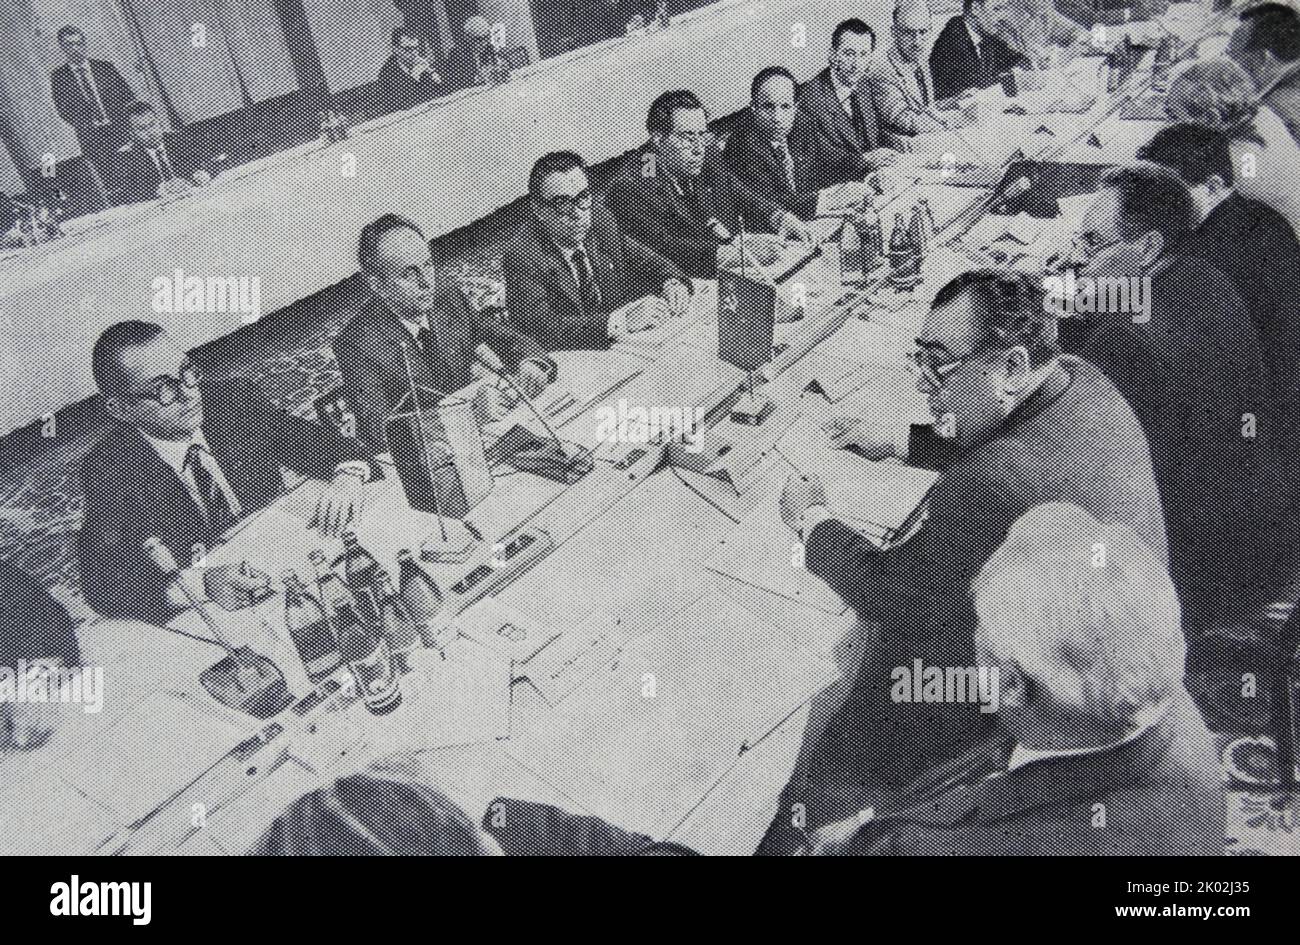 XXXII sessione della Commissione intergovernativa per la cooperazione economica, scientifica e tecnica tra l'URSS e la RDT. Mosca, 1983 Foto Stock